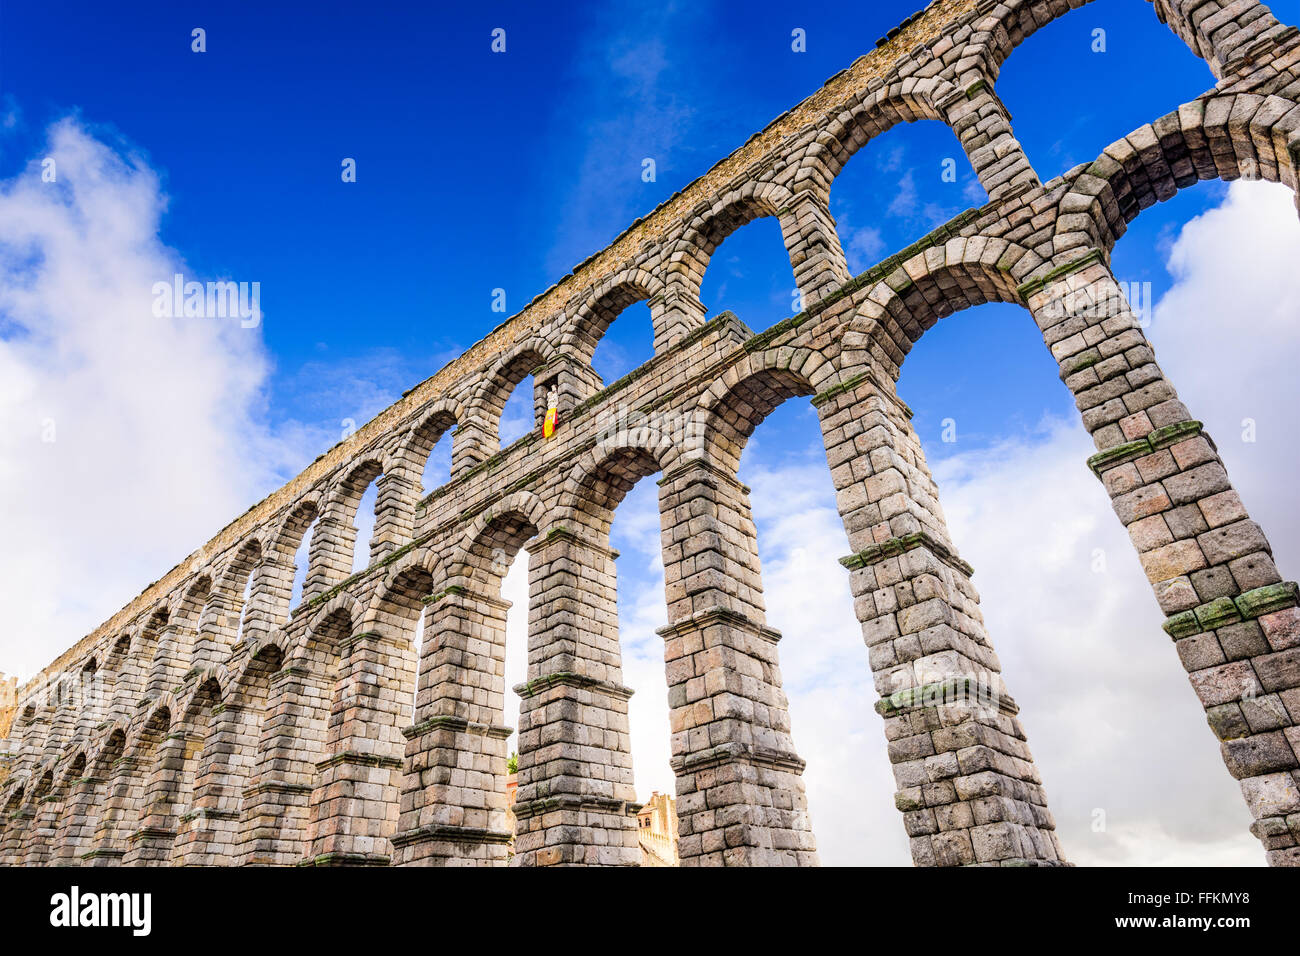 Segovia, Espagne sur la ville sur la Plaza del Azoguejo et l'ancien aqueduc romain. Banque D'Images